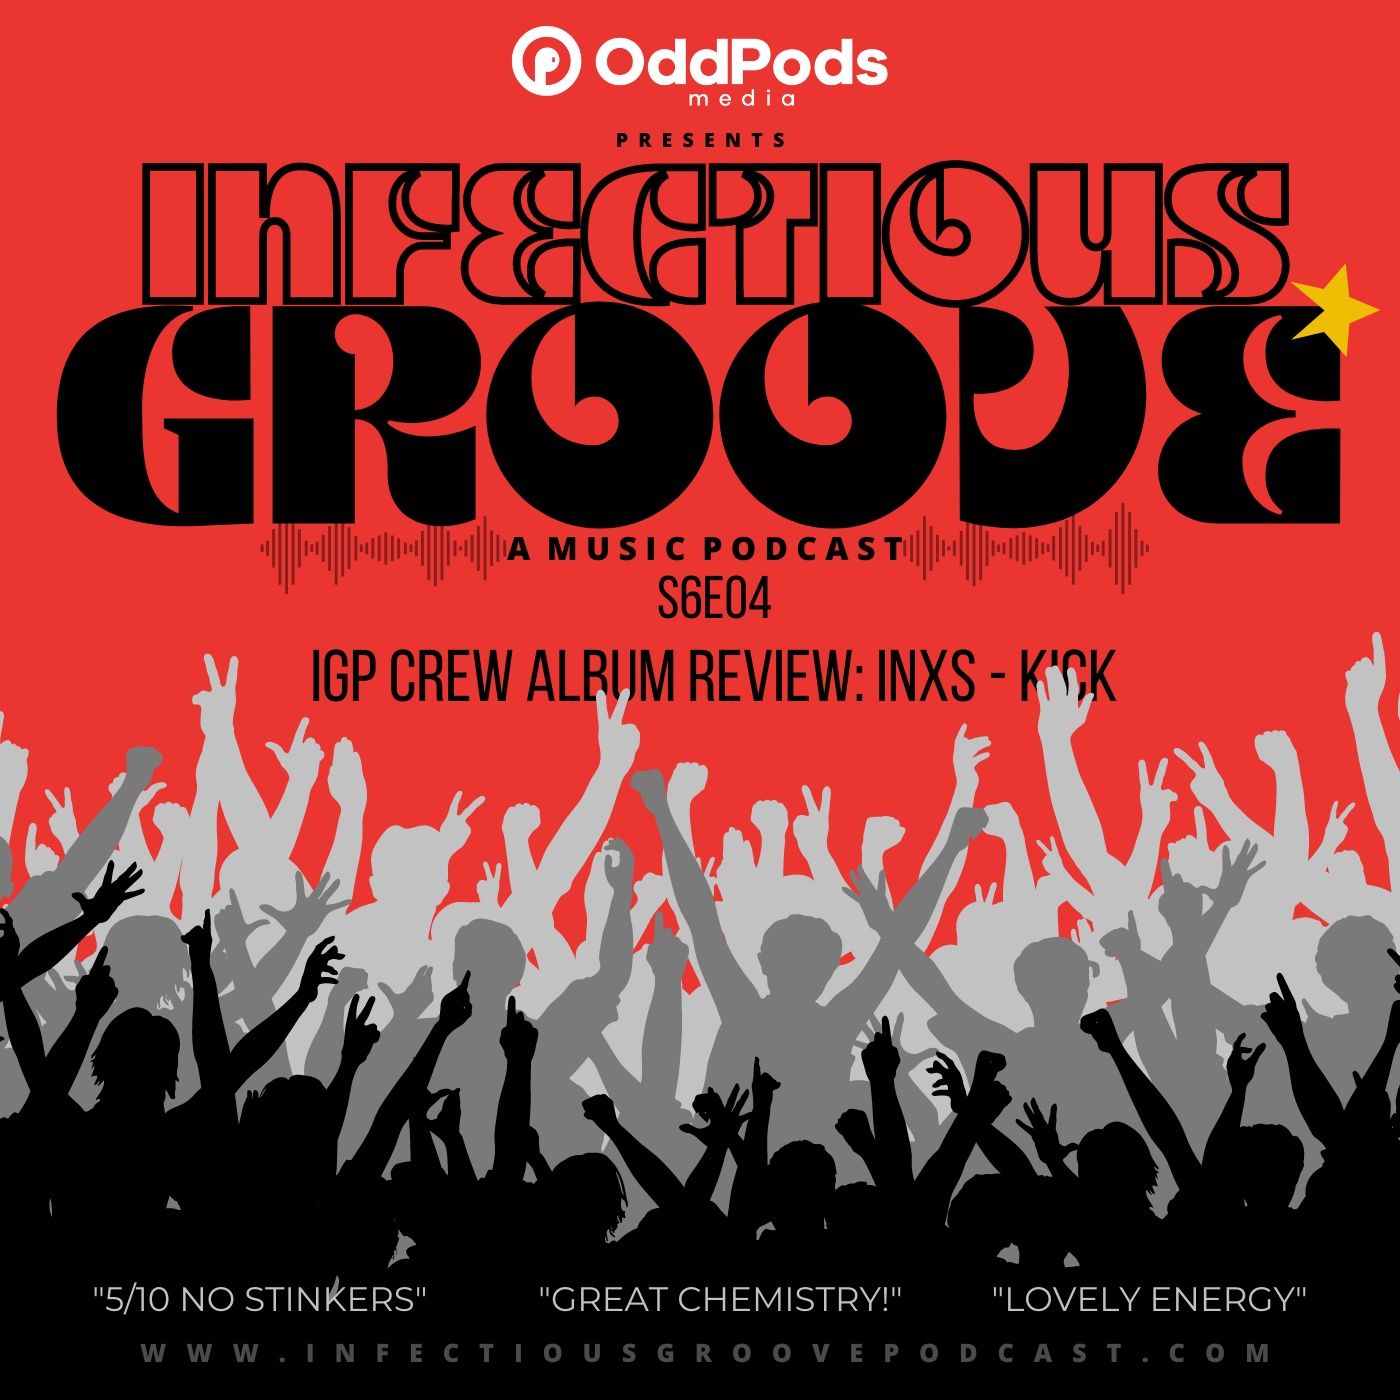 IGP Crew Album Review: INXS - Kick Image